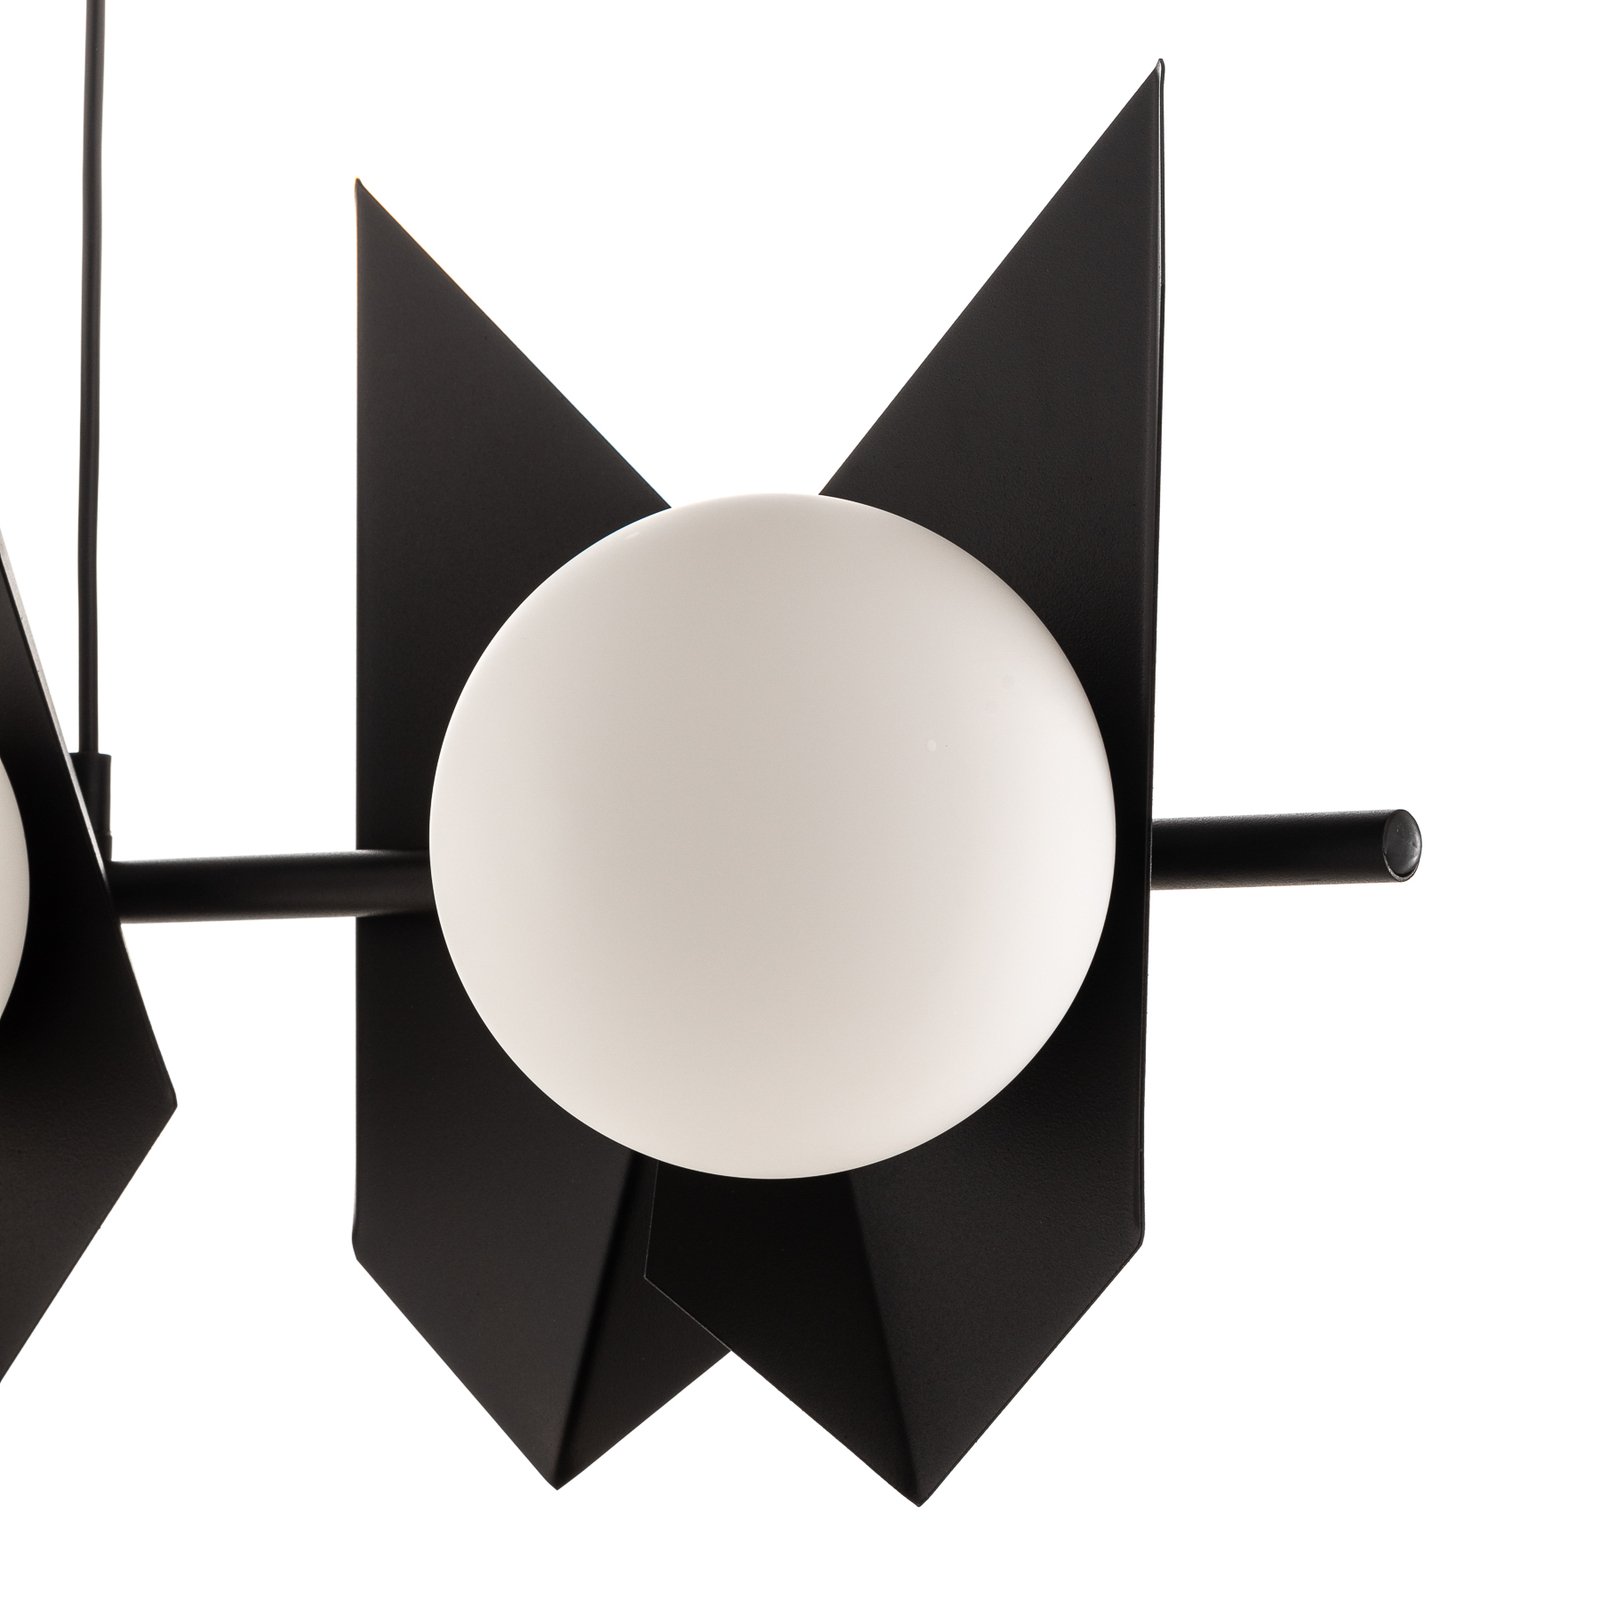 Riippuvalo Shield musta/valkoinen, 6-lamppuinen